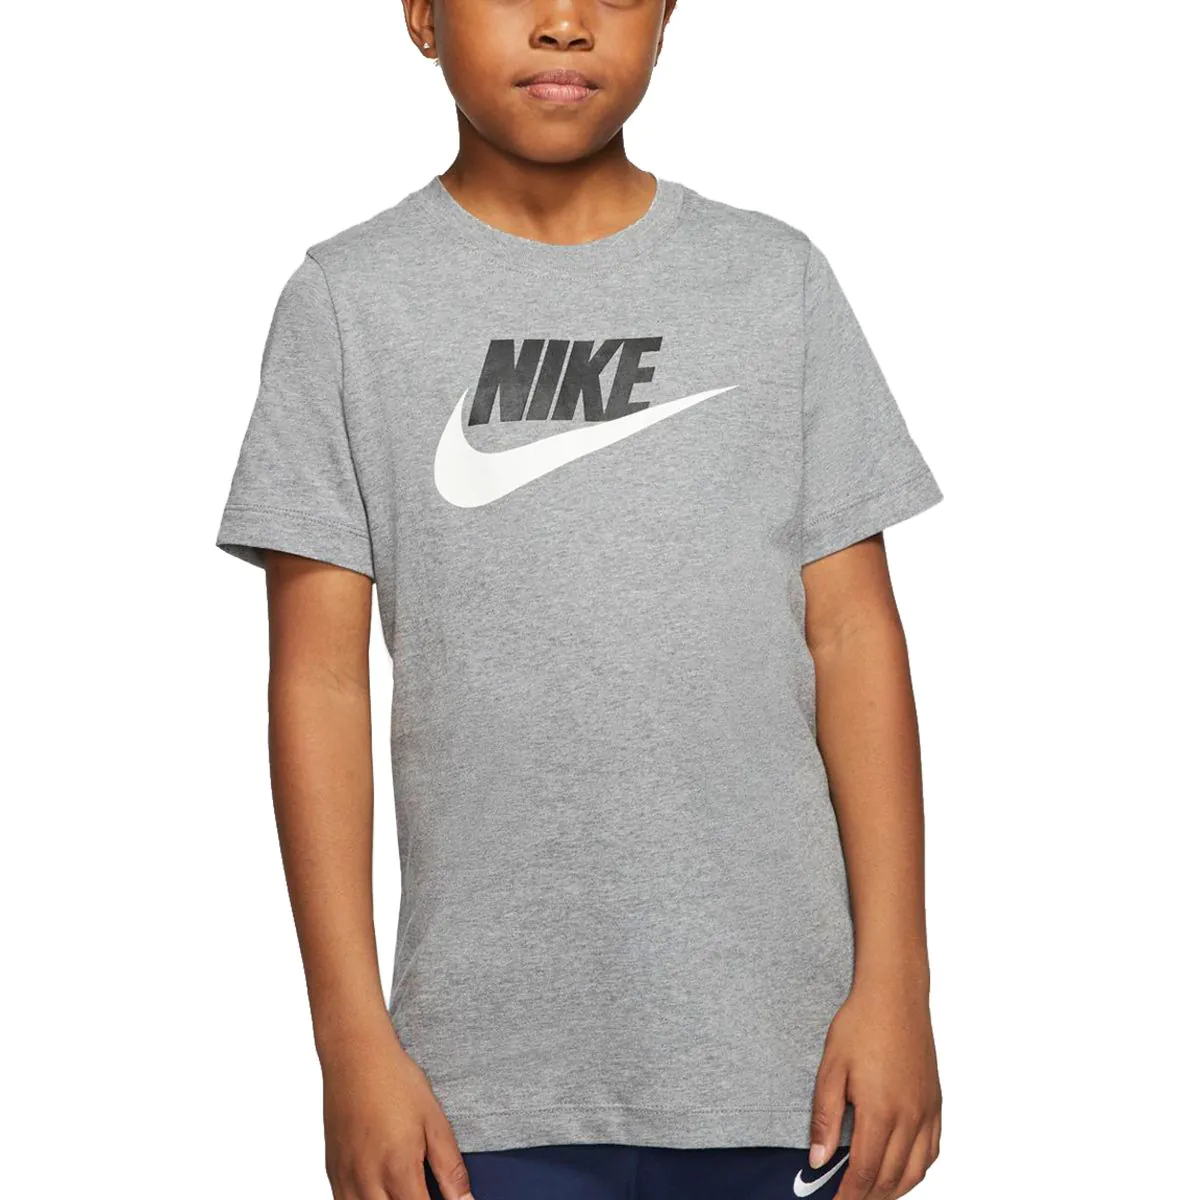 Nike Sportswear Boys' Cotton T-Shirt AR5252-091